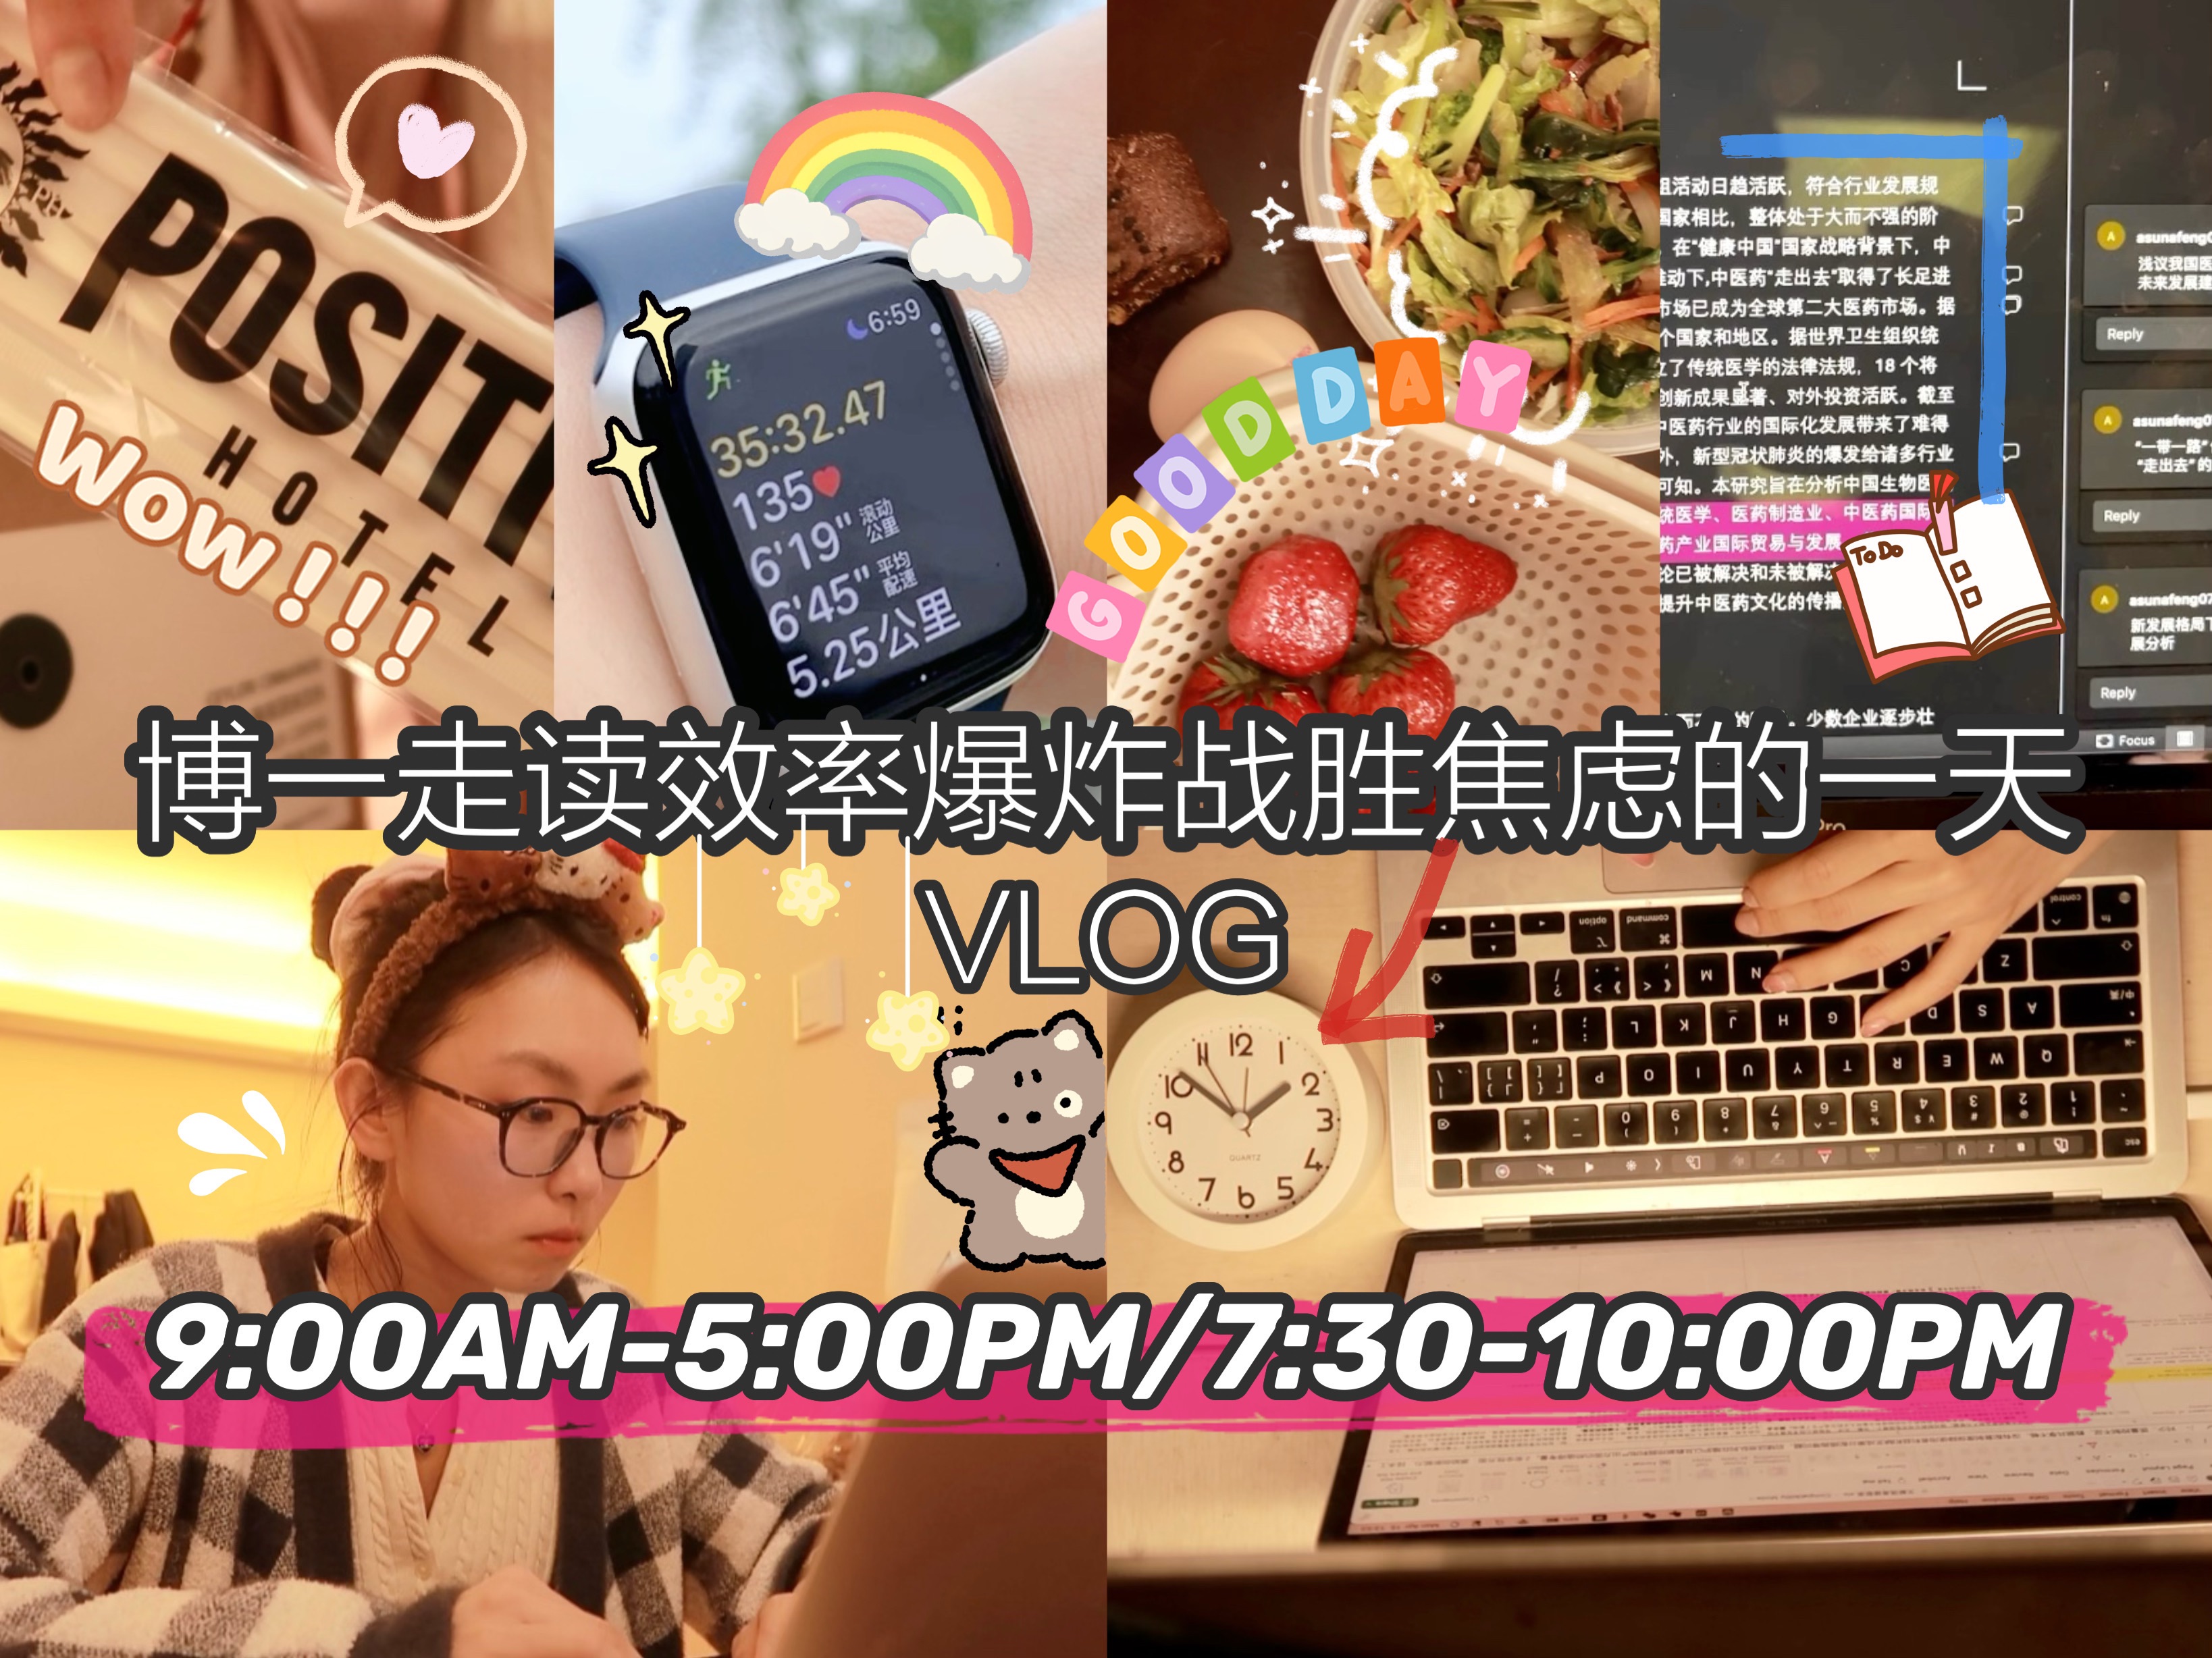 【Asuna】忙碌充实是最好的解药!早起晨跑/学习工作10h/码字8000+/自律三餐